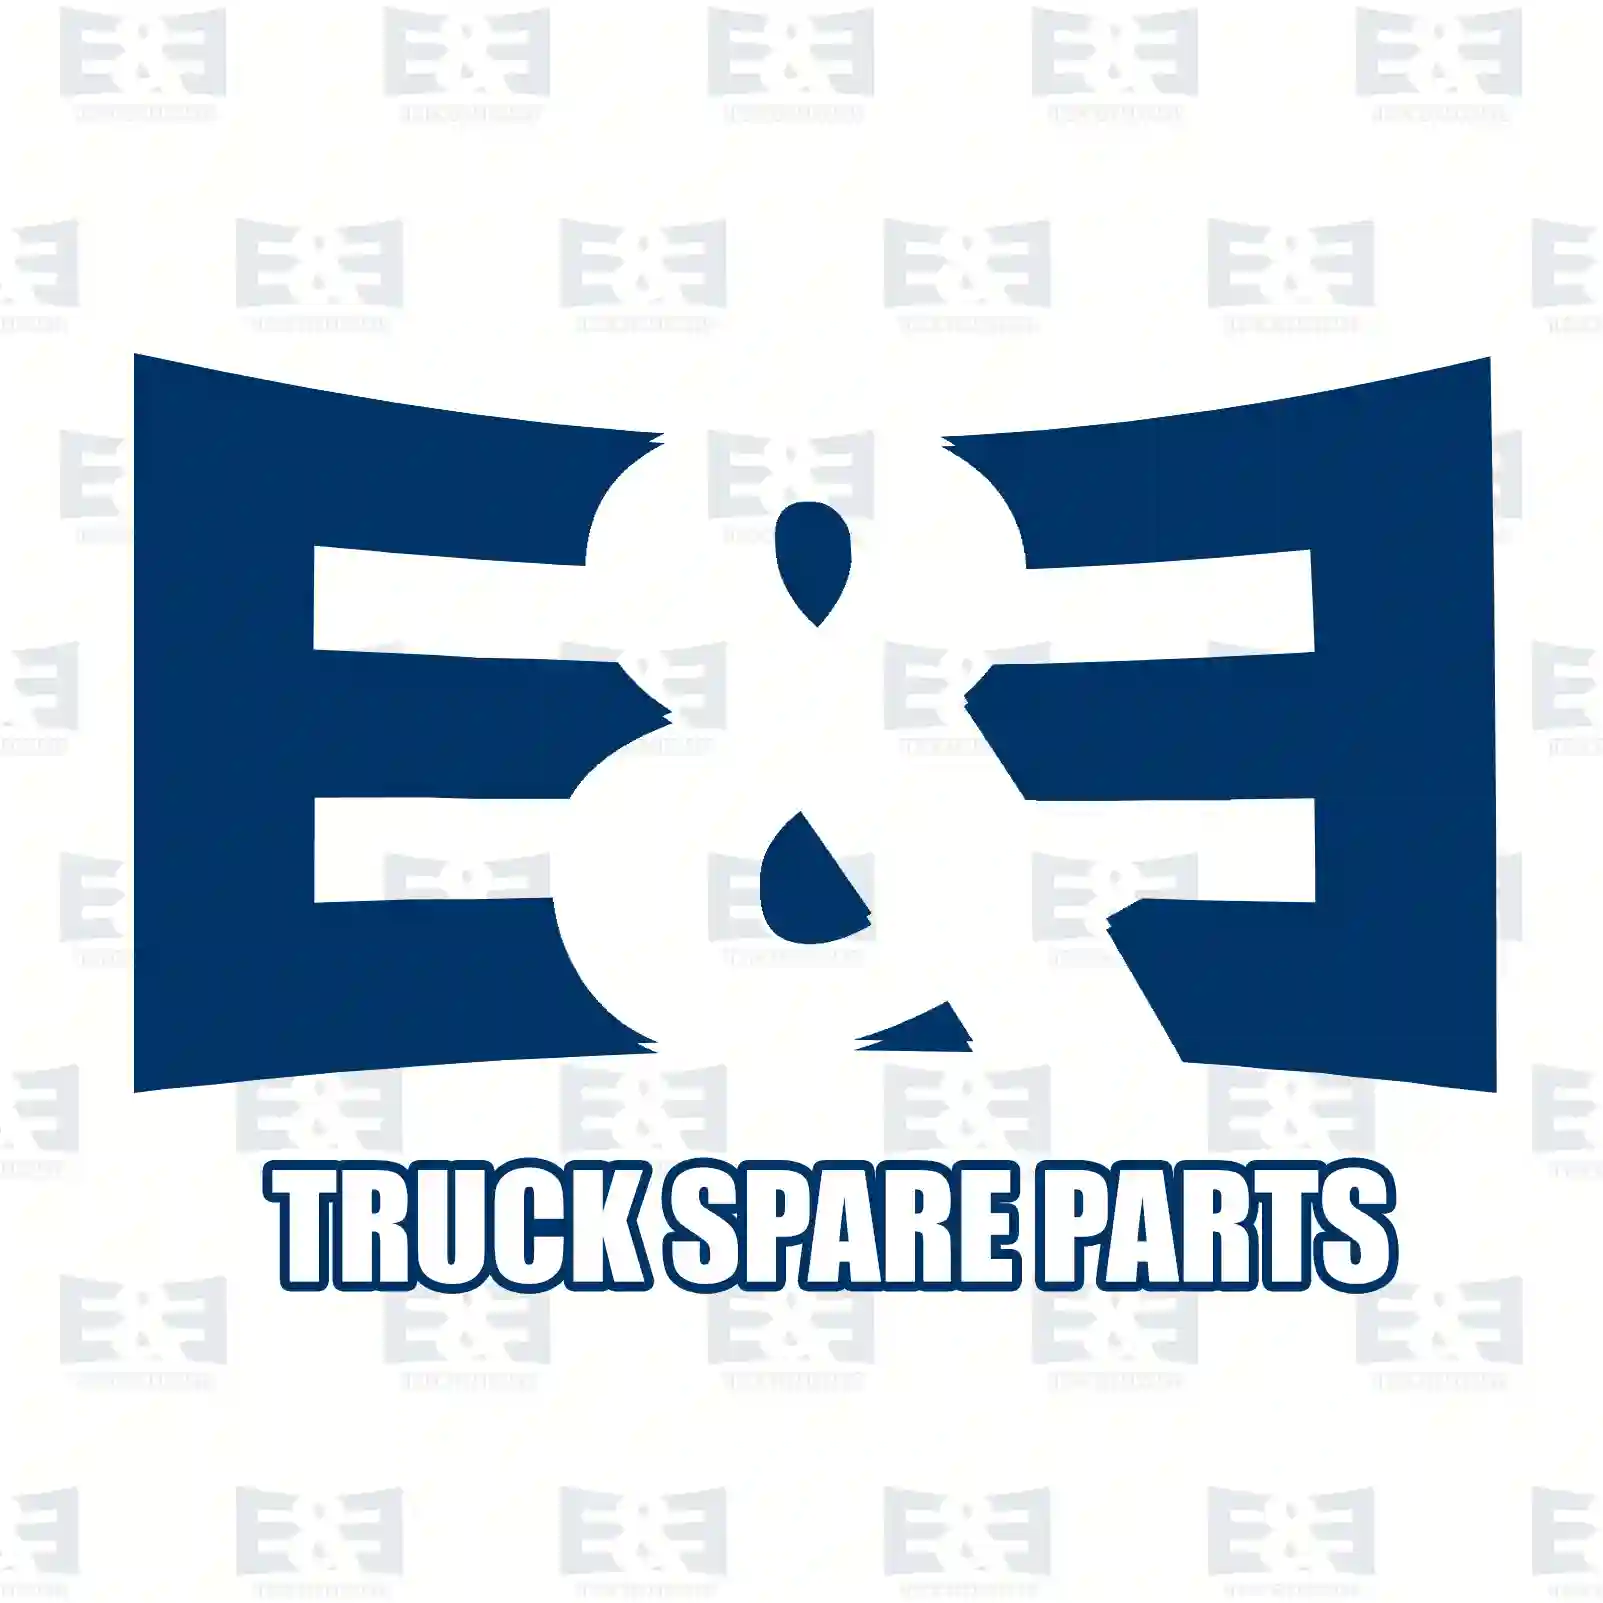 Cabin shock absorber, 2E2276479, 81417226009, 81417226012, 81417226033, 81417226037, ||  2E2276479 E&E Truck Spare Parts | Truck Spare Parts, Auotomotive Spare Parts Cabin shock absorber, 2E2276479, 81417226009, 81417226012, 81417226033, 81417226037, ||  2E2276479 E&E Truck Spare Parts | Truck Spare Parts, Auotomotive Spare Parts